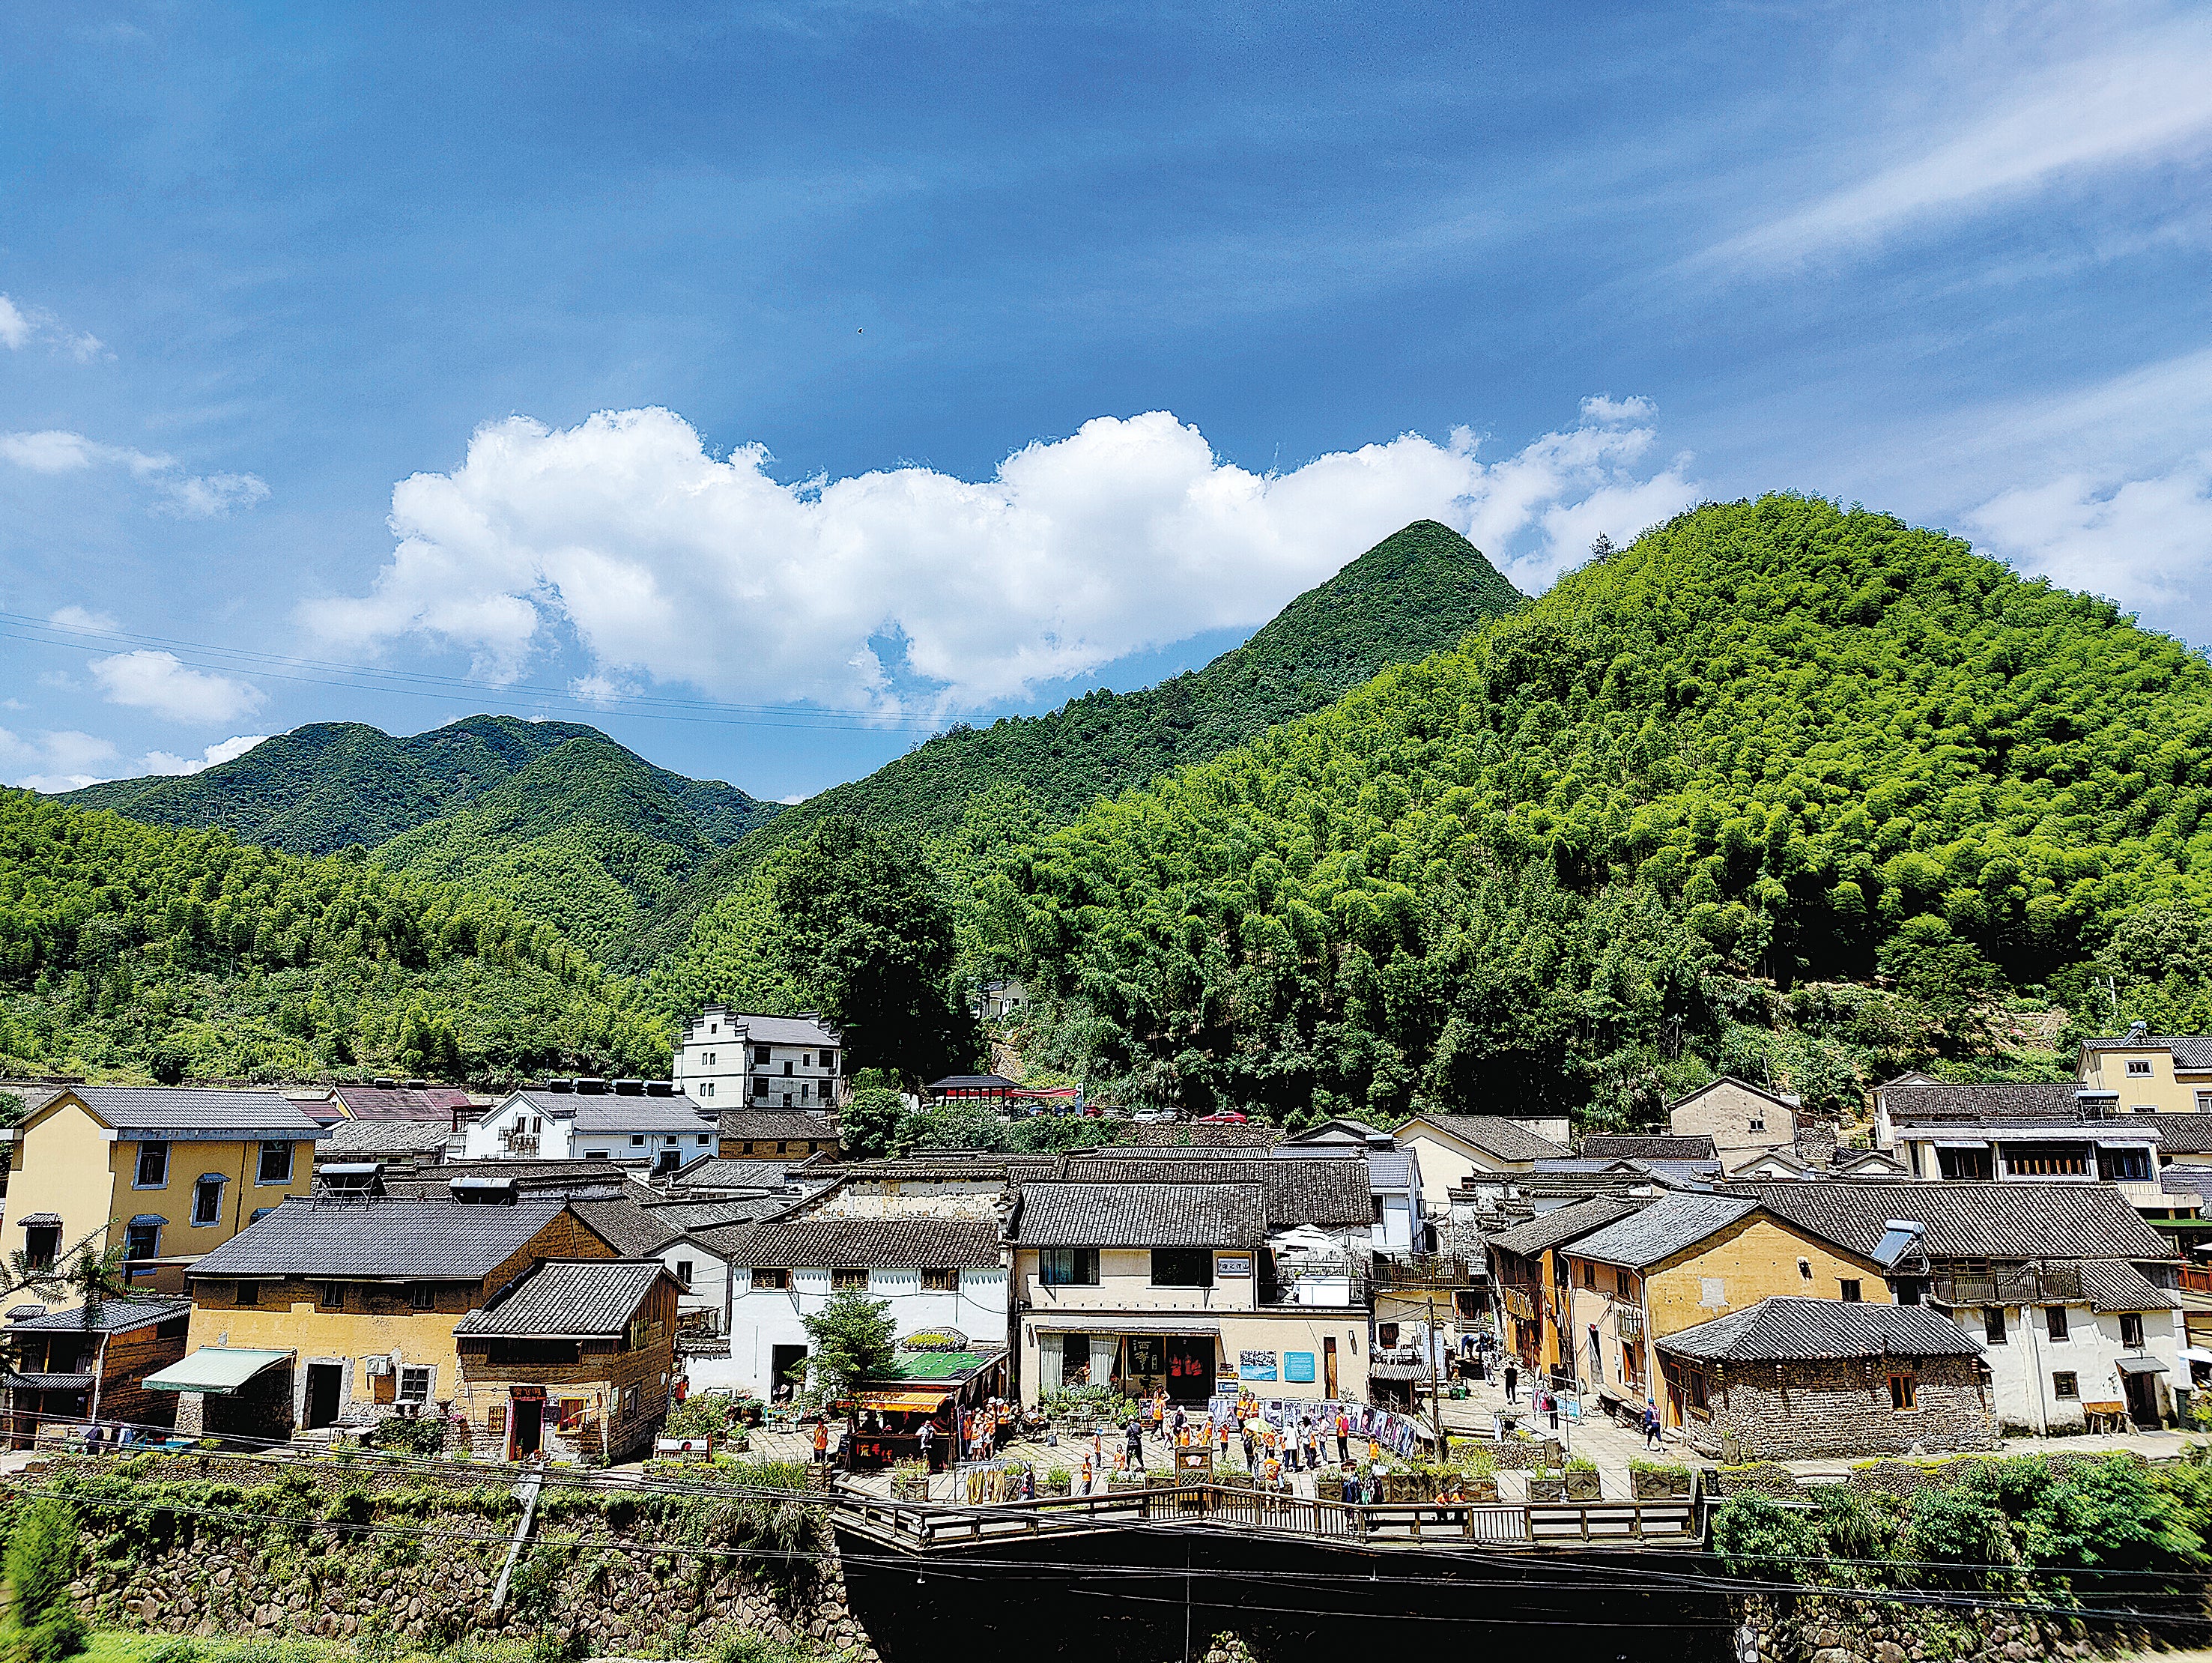 A view of Shishe village, Tonglu county, Zhejiang province